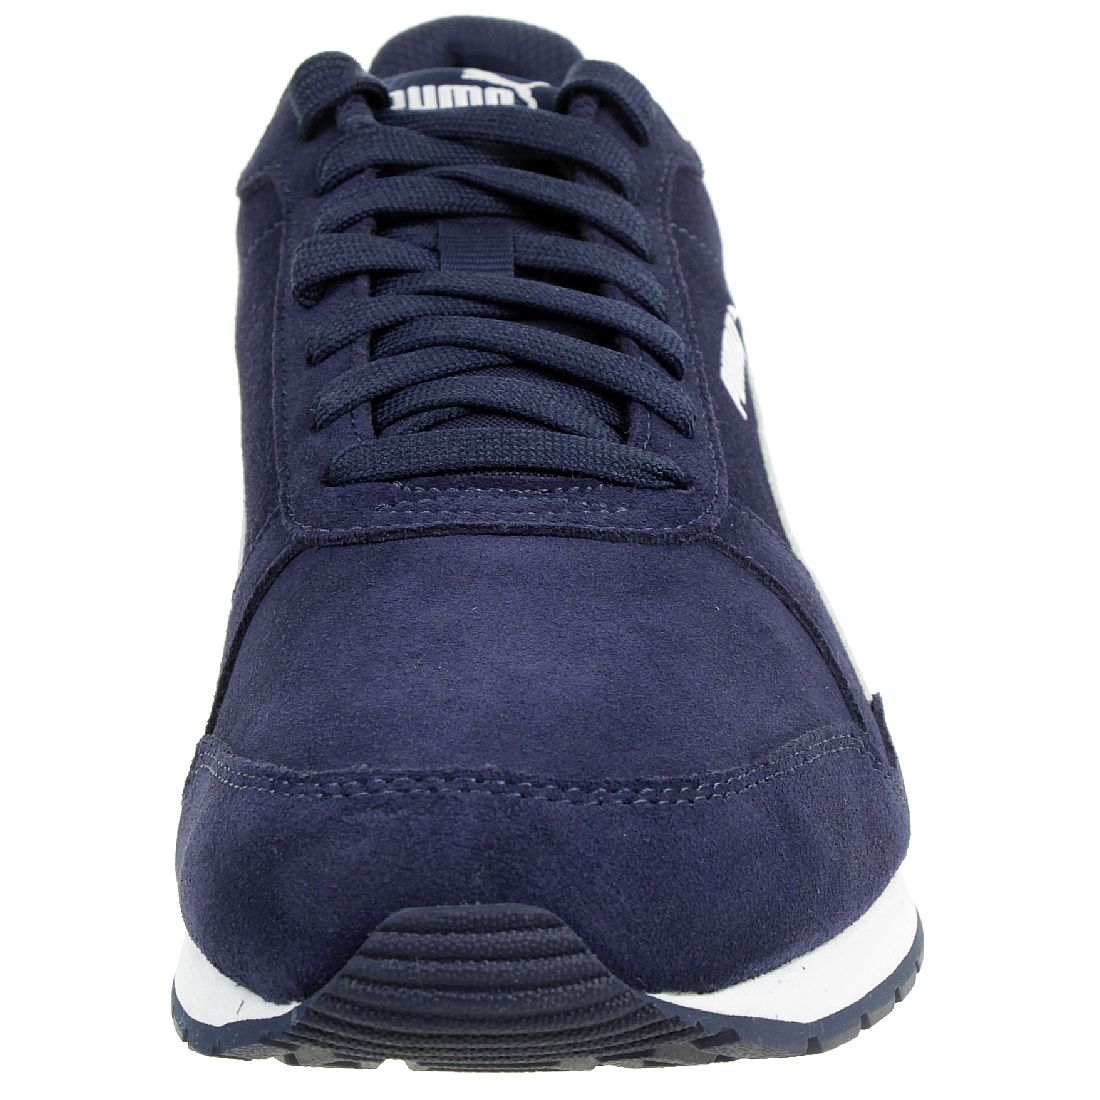 Puma ST Runner v2 SD Sneaker Schuhe 365279 10 Herren Schuhe blau